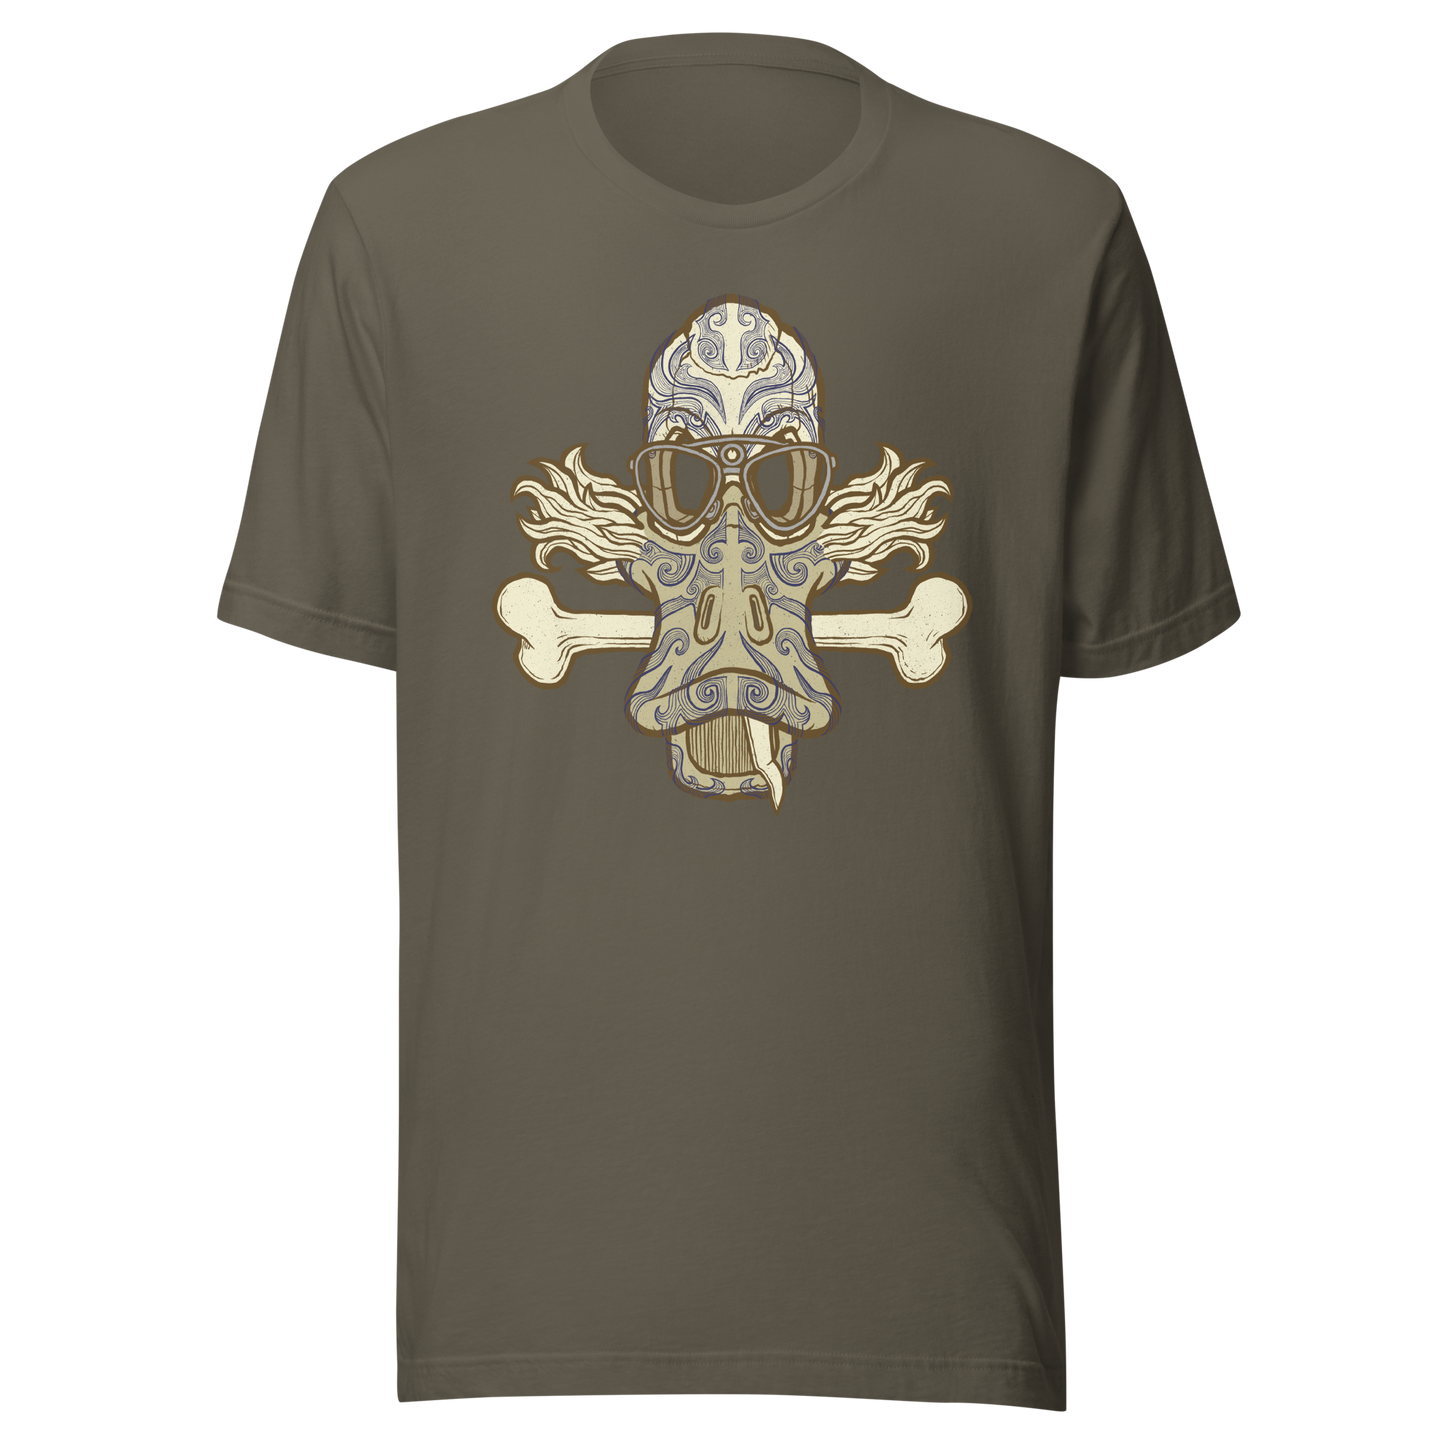 No 001 Wierd Duck Skull collection t-shirt